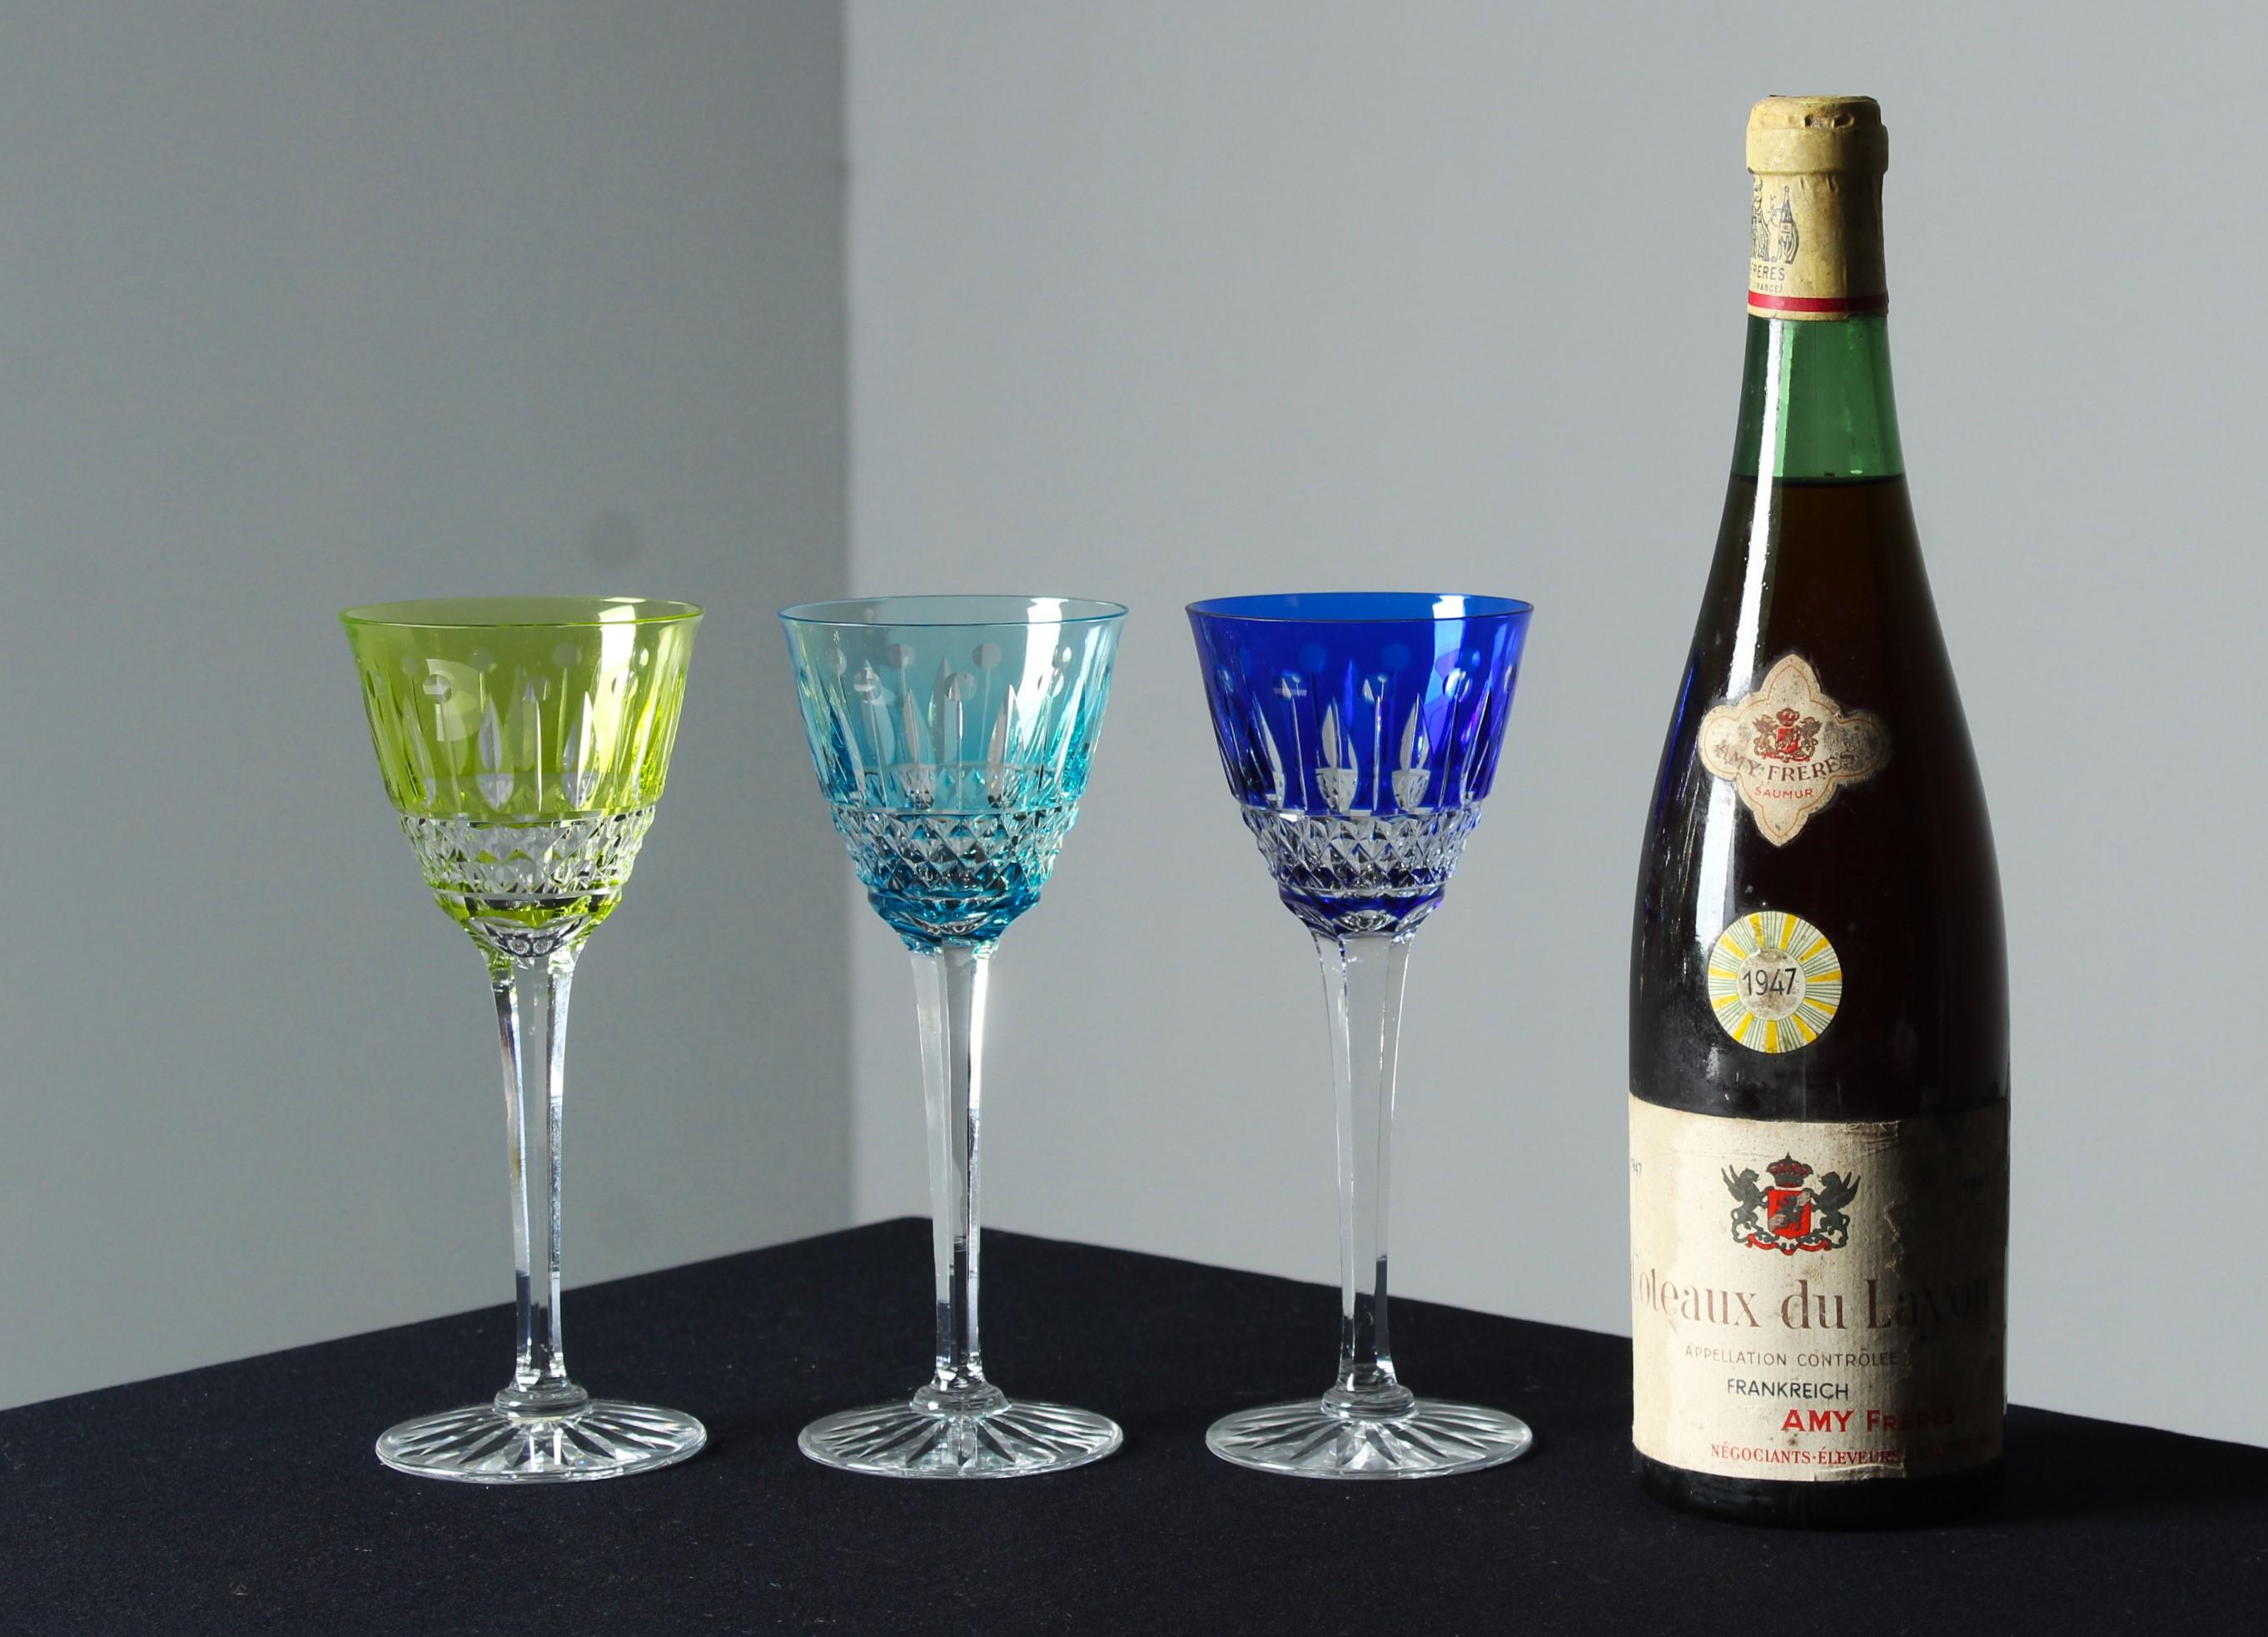 Ein schönes Set aus drei Aperitifgläsern in Grün, Türkis und Blau.

Im Frankreich des 19. Jahrhunderts erlebte die Glasmacherkunst eine Renaissance, inspiriert durch die reiche Geschichte und das Erbe der alten Techniken. Antike Gläser aus dieser